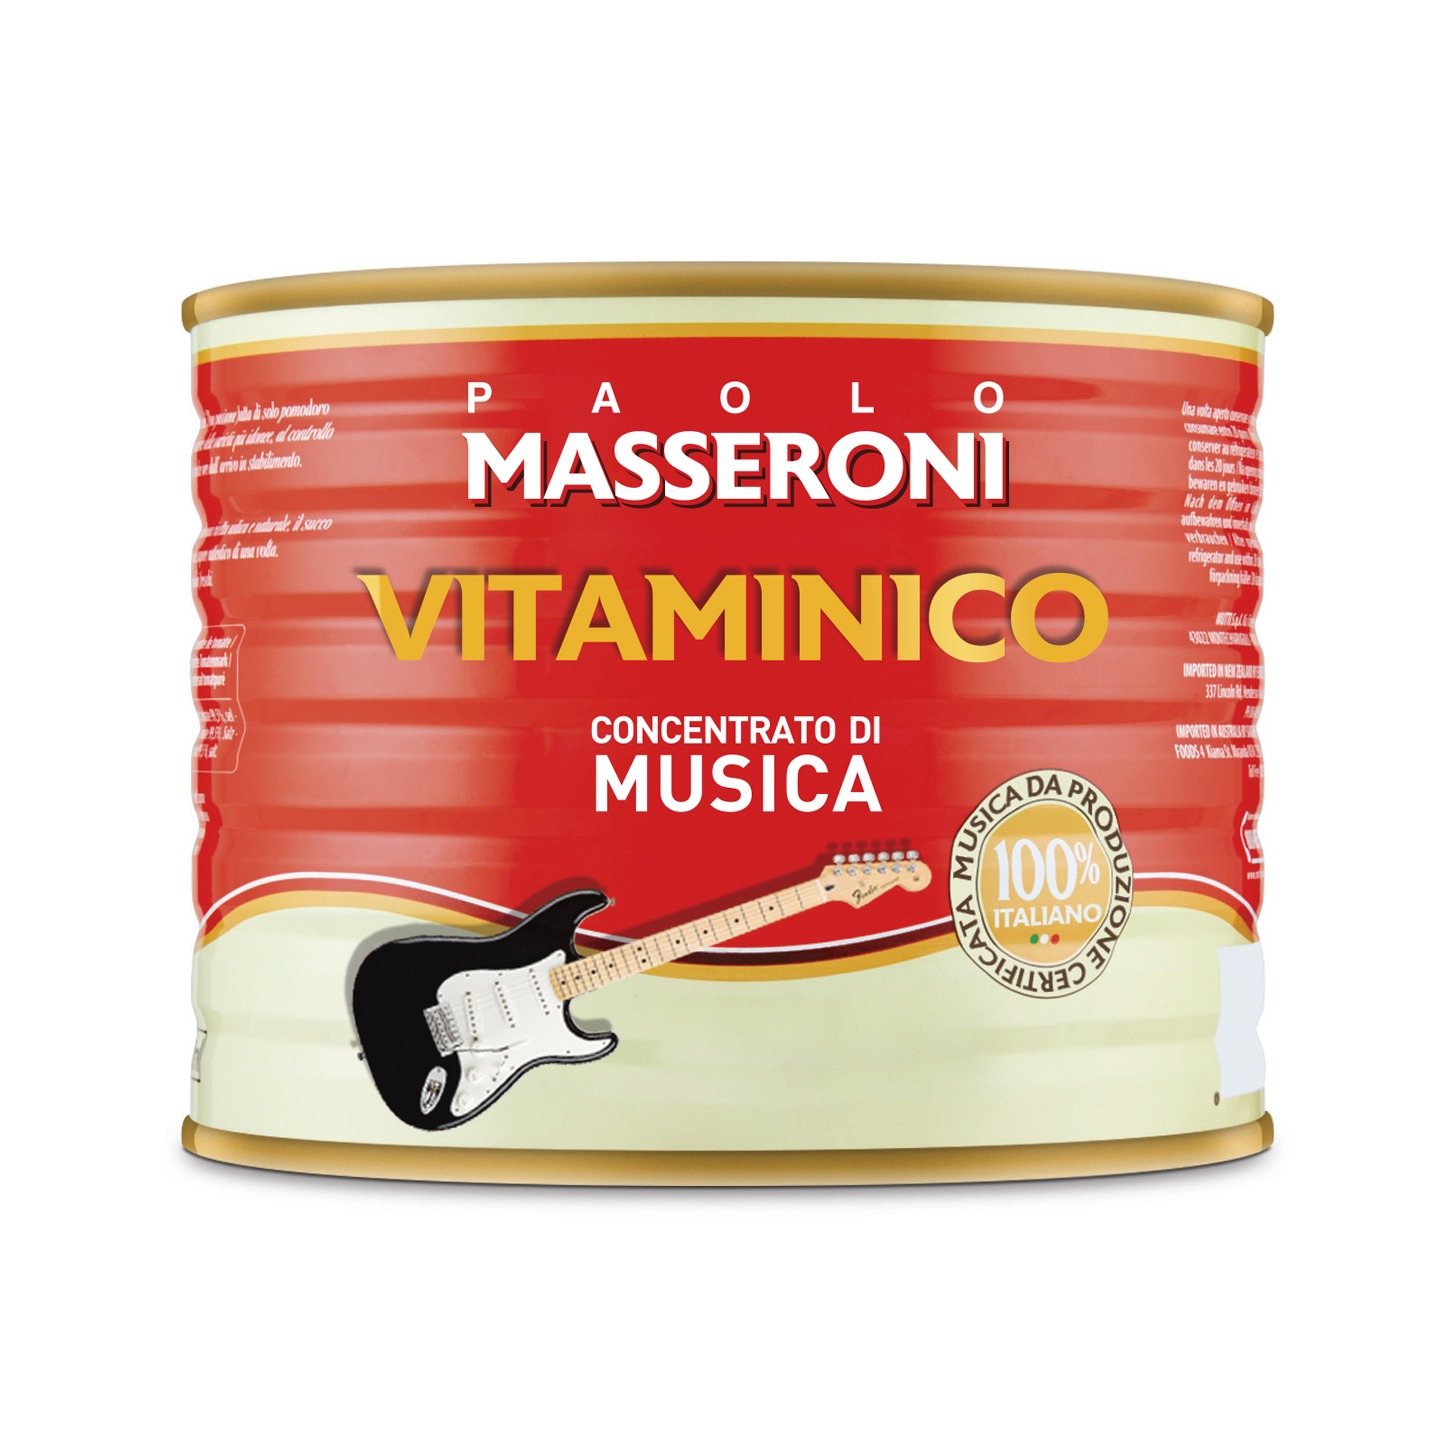 Paolo Masseroni - Vitaminico